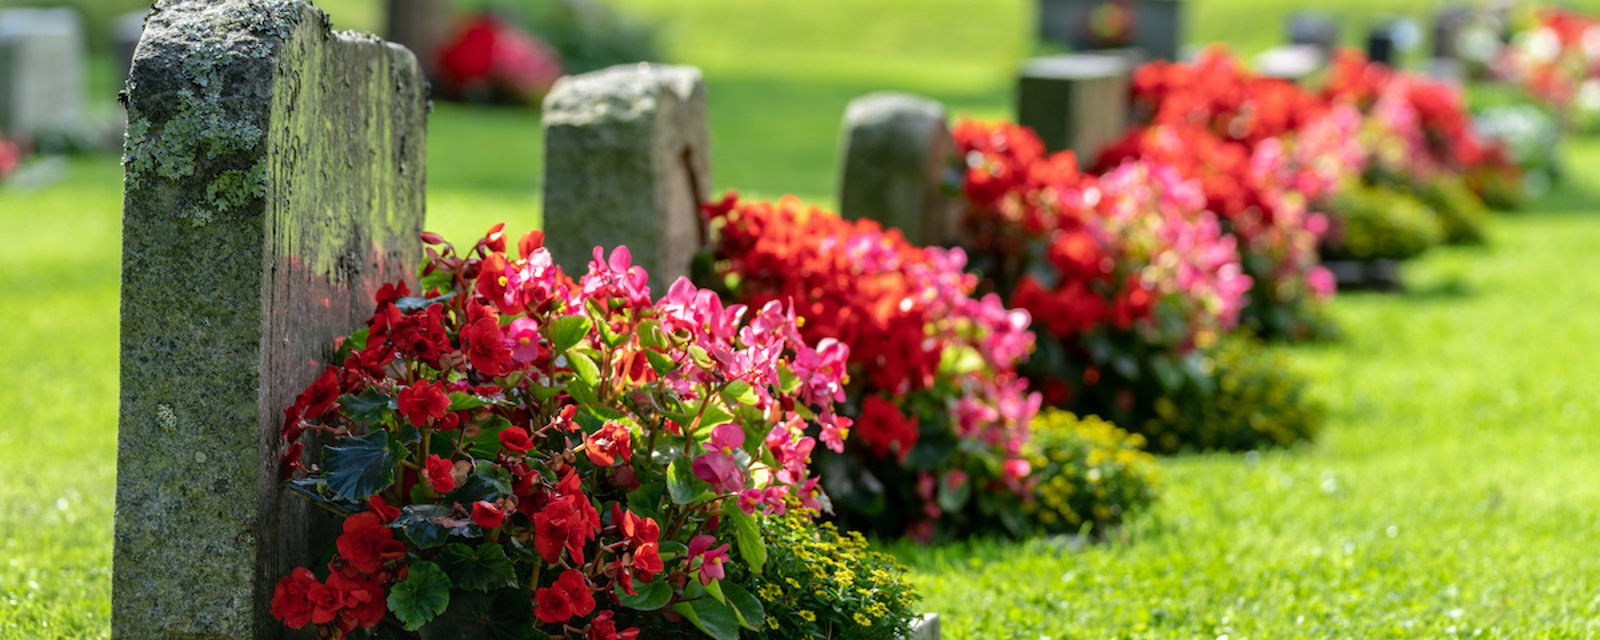 Nouveau service au cimetière: un logiciel pour retrouver une pierre tombale